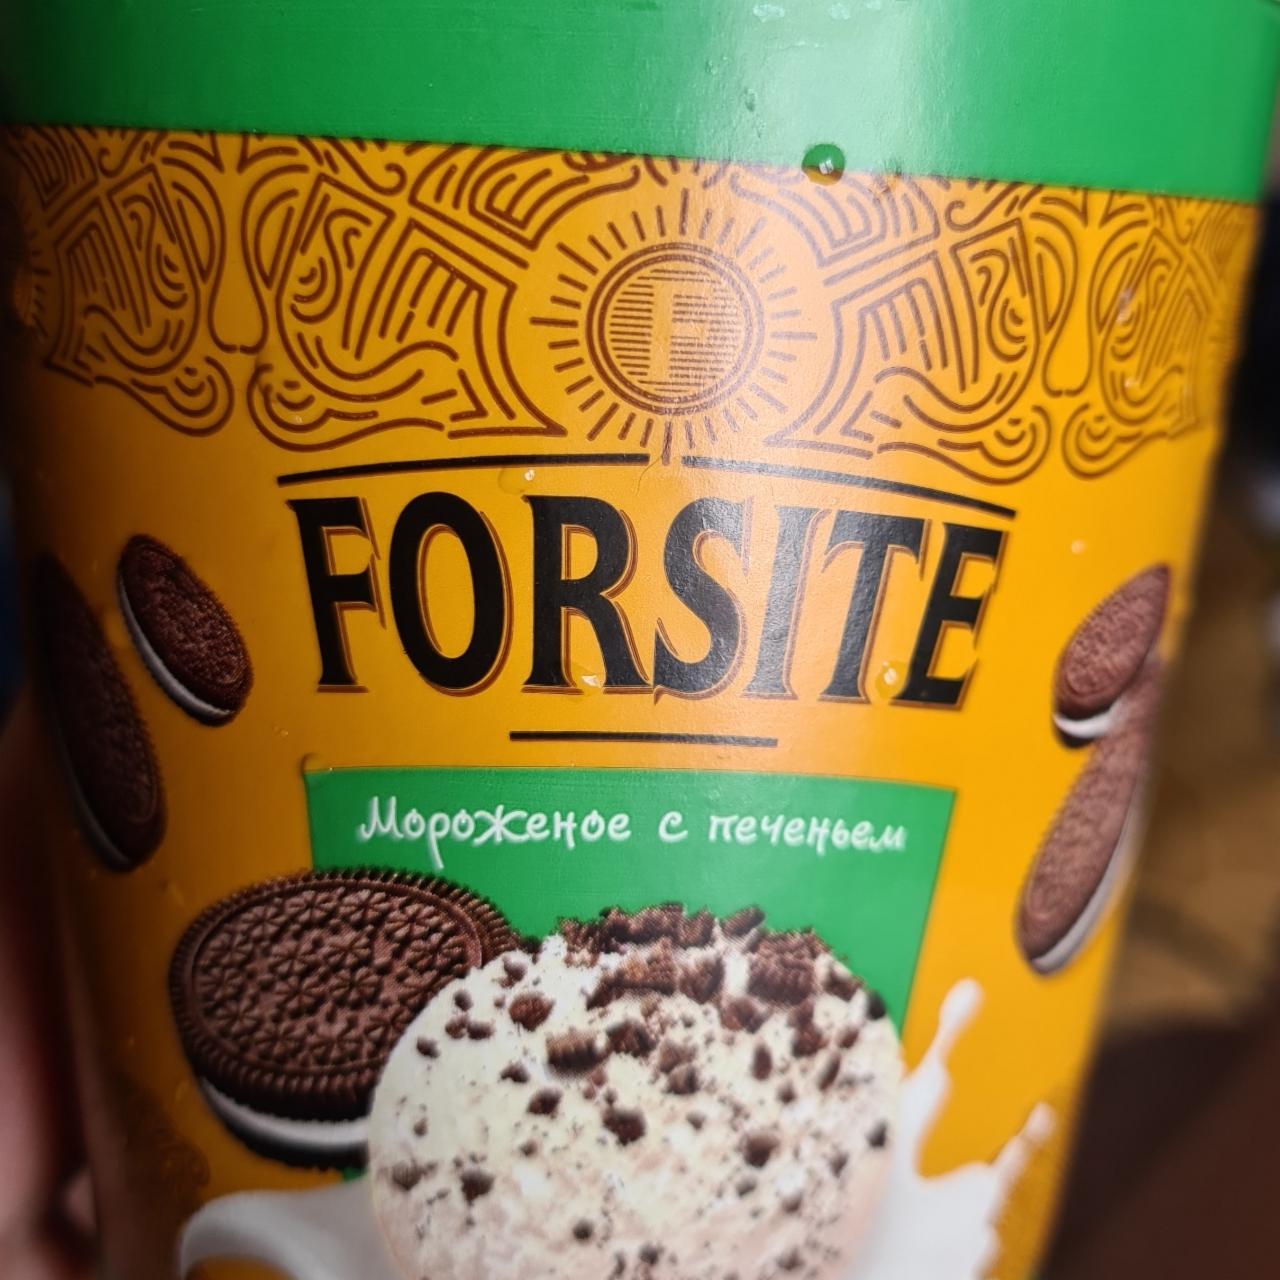 Фото - мороженое с печеньем Forsite